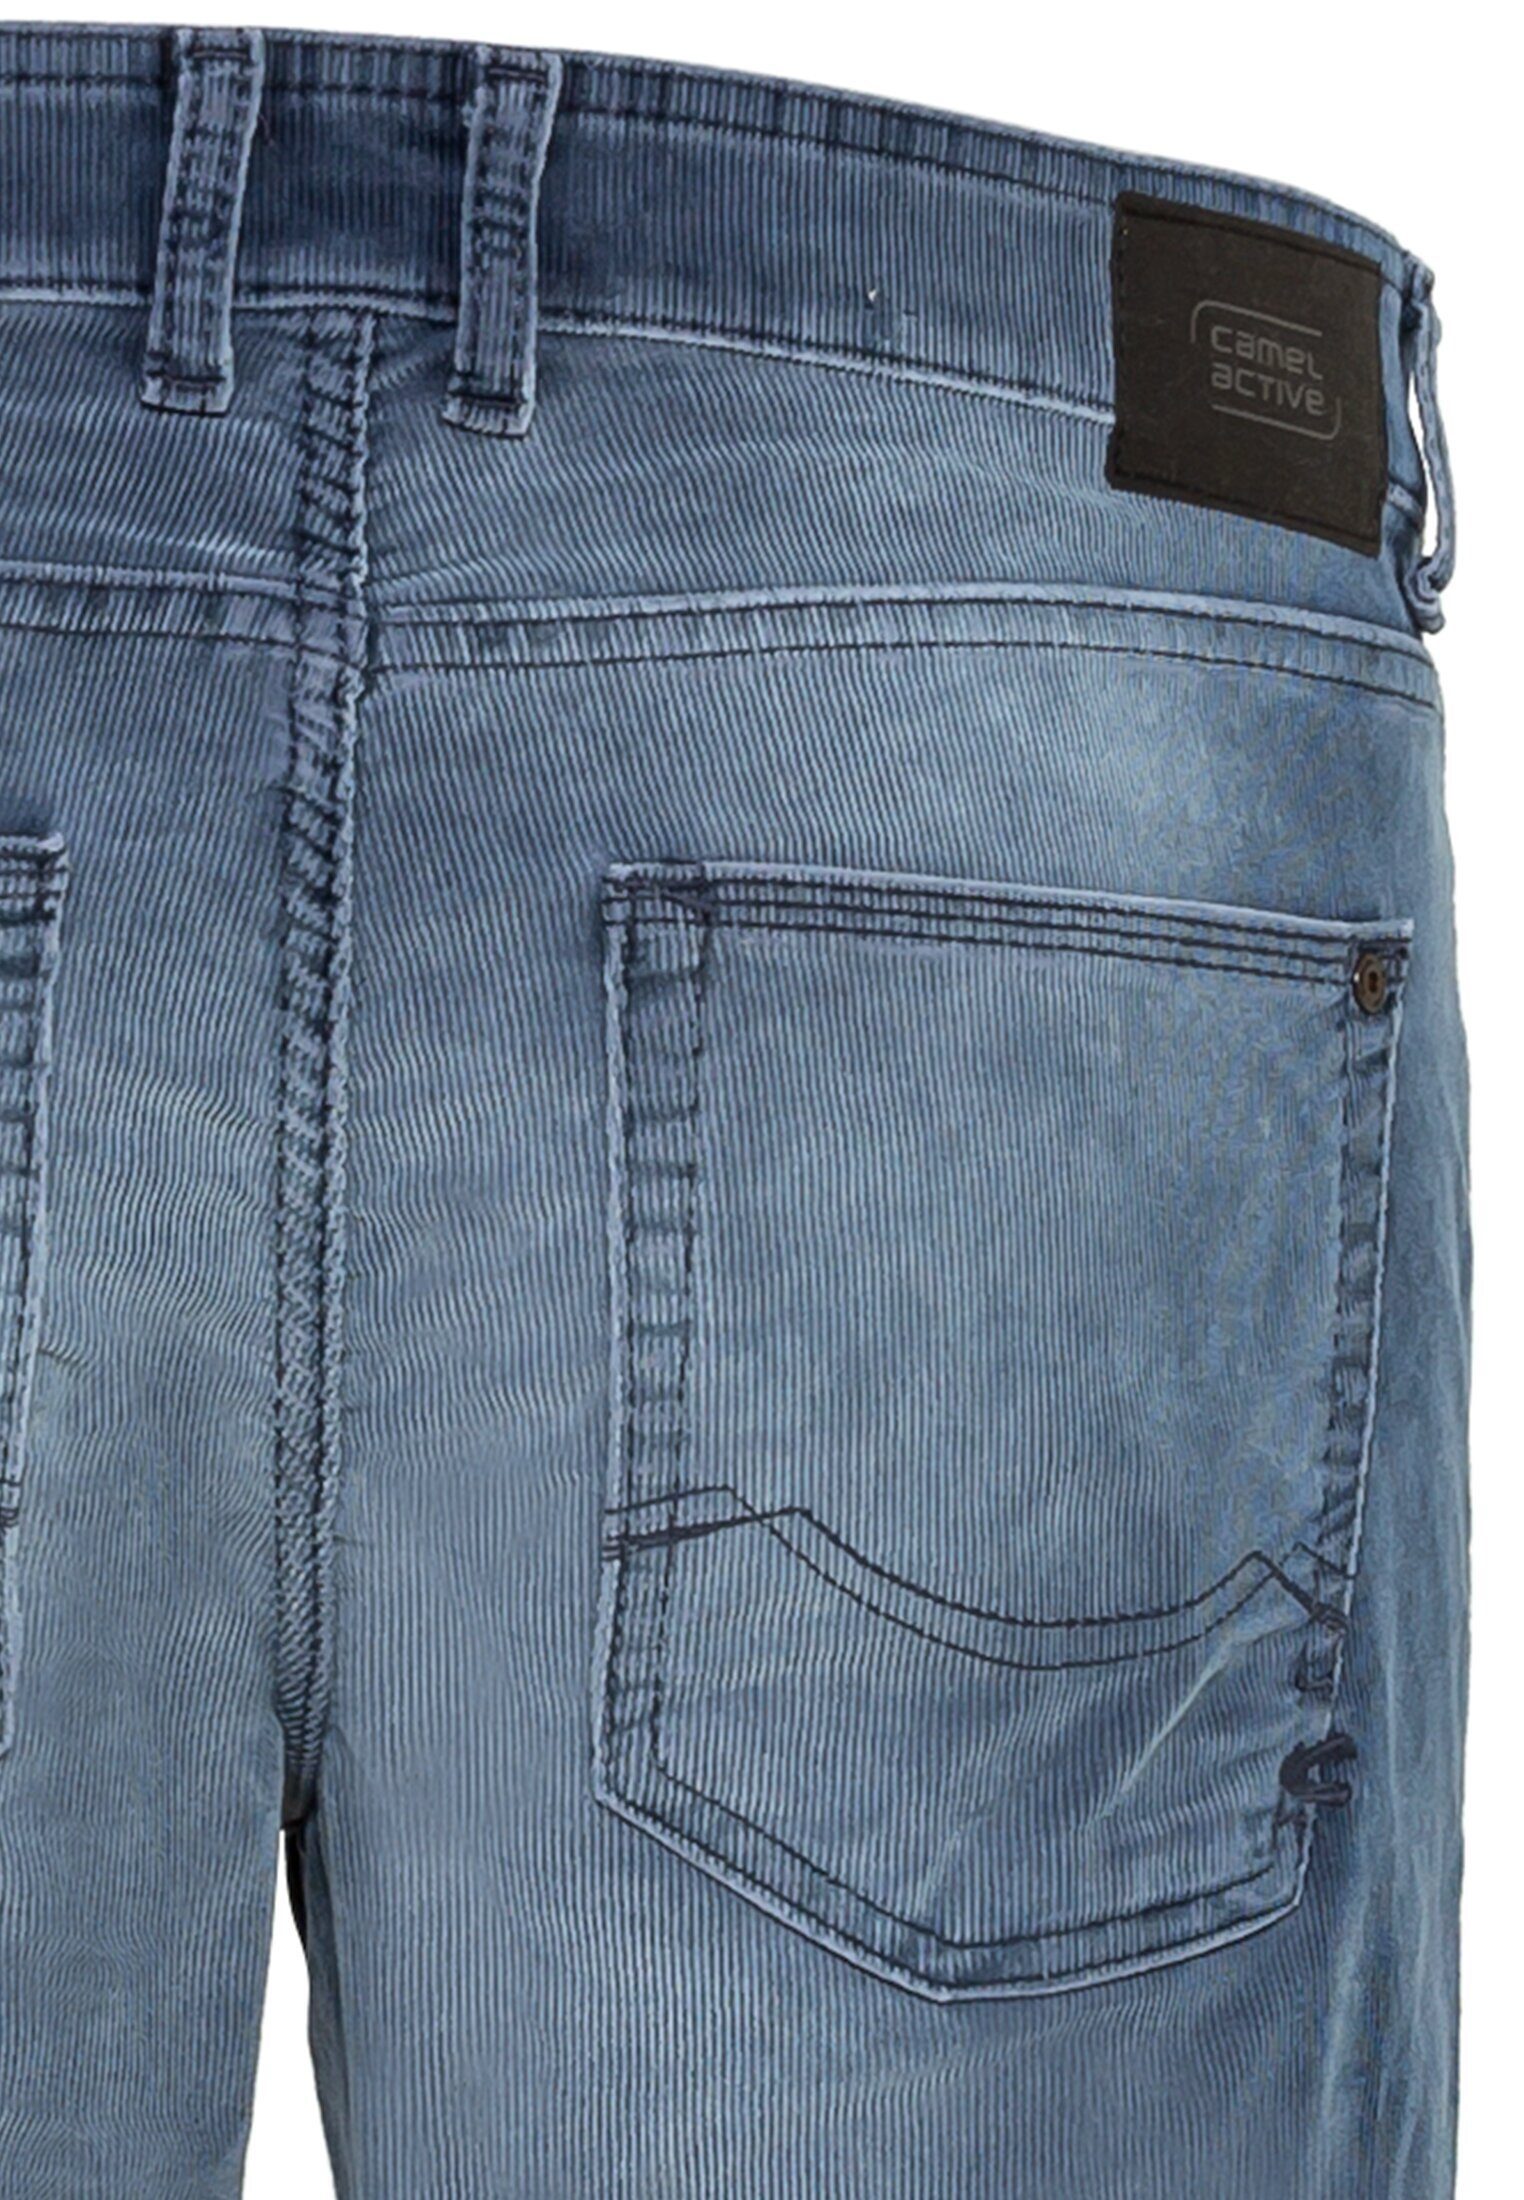 camel active 5-Pocket-Jeans Slim Cordhose Fit Blau